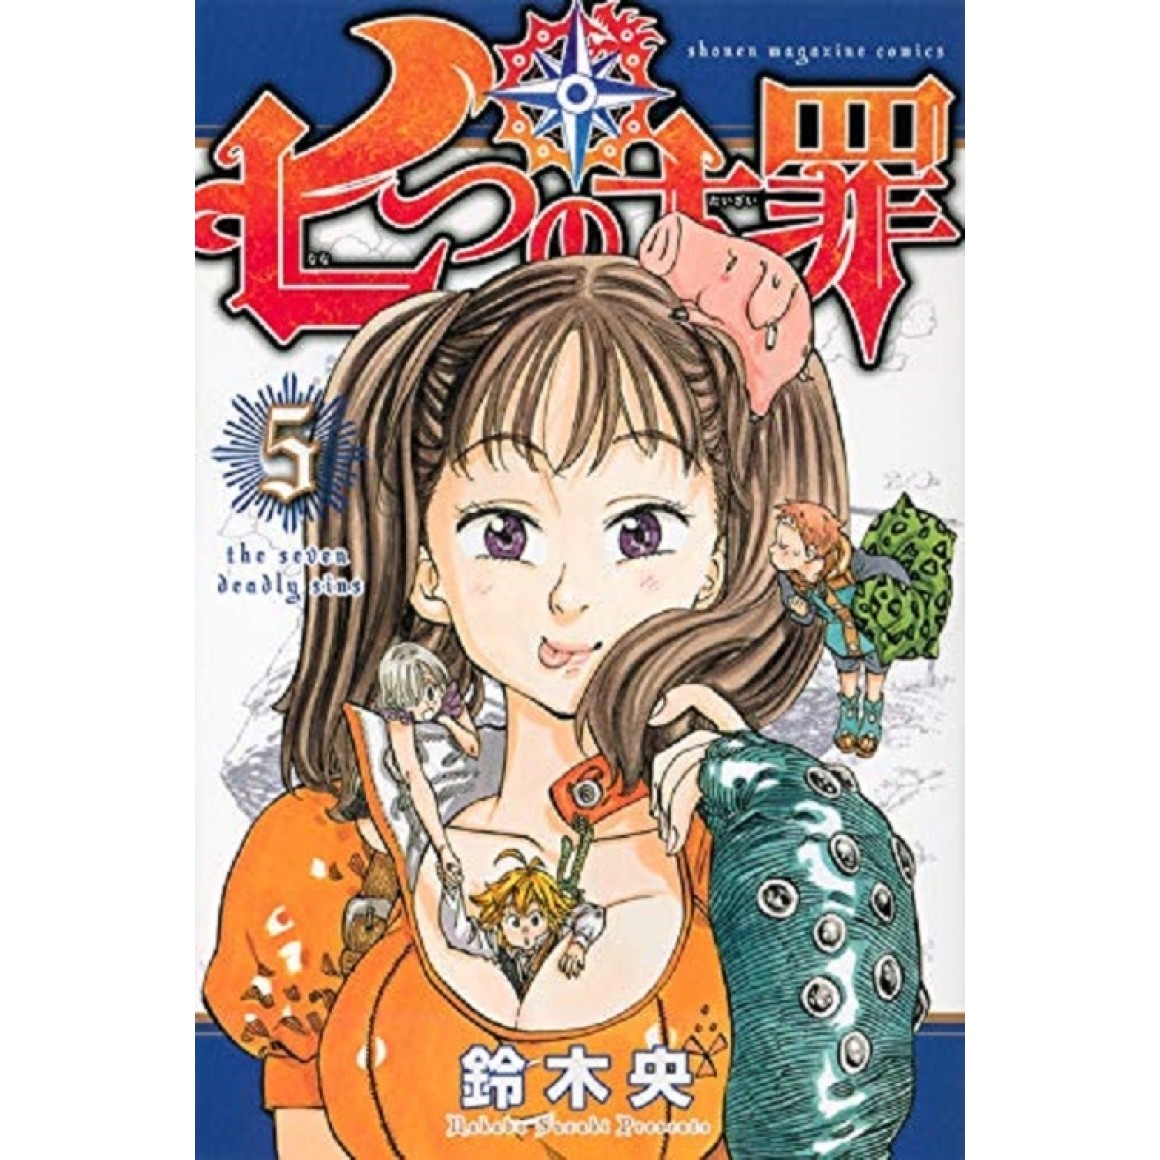 The Seven Deadly Sins: Nanatsu no Taizai - Volume - 2